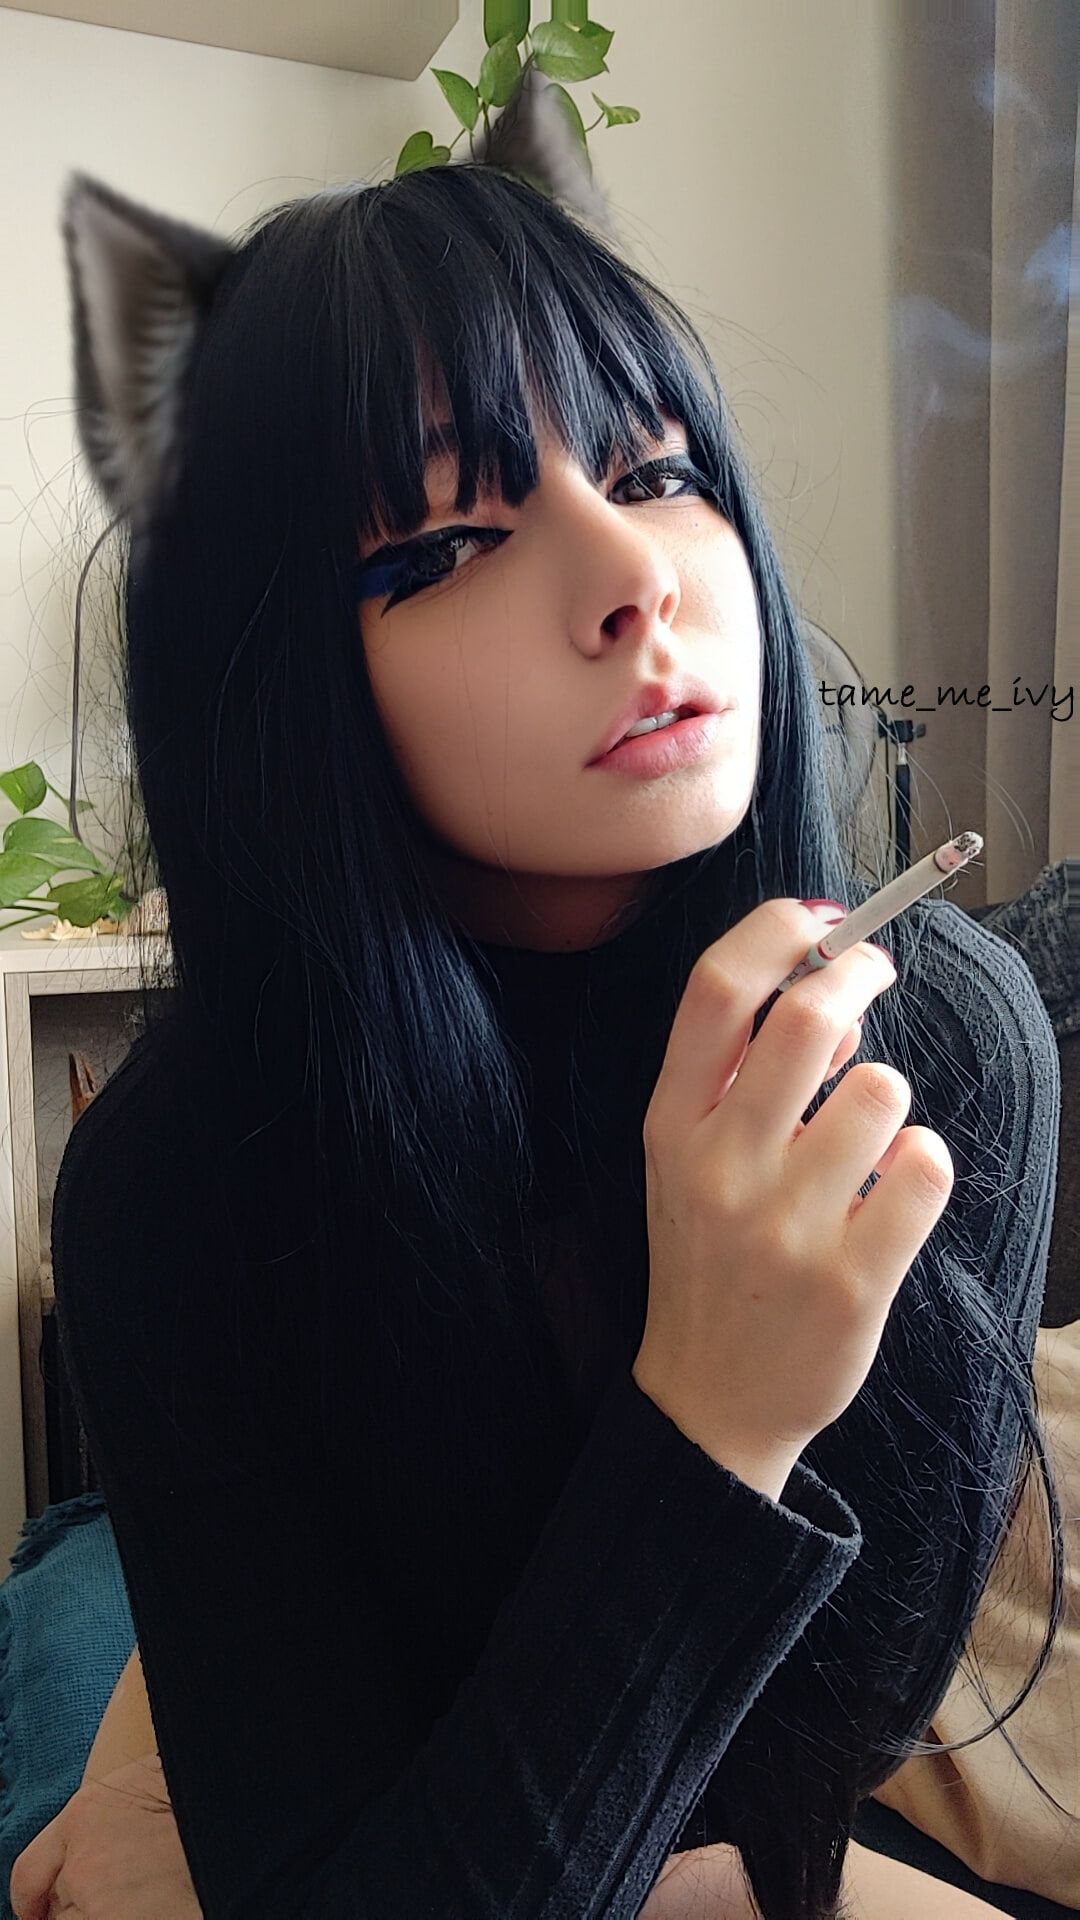 Goth Girl smoking